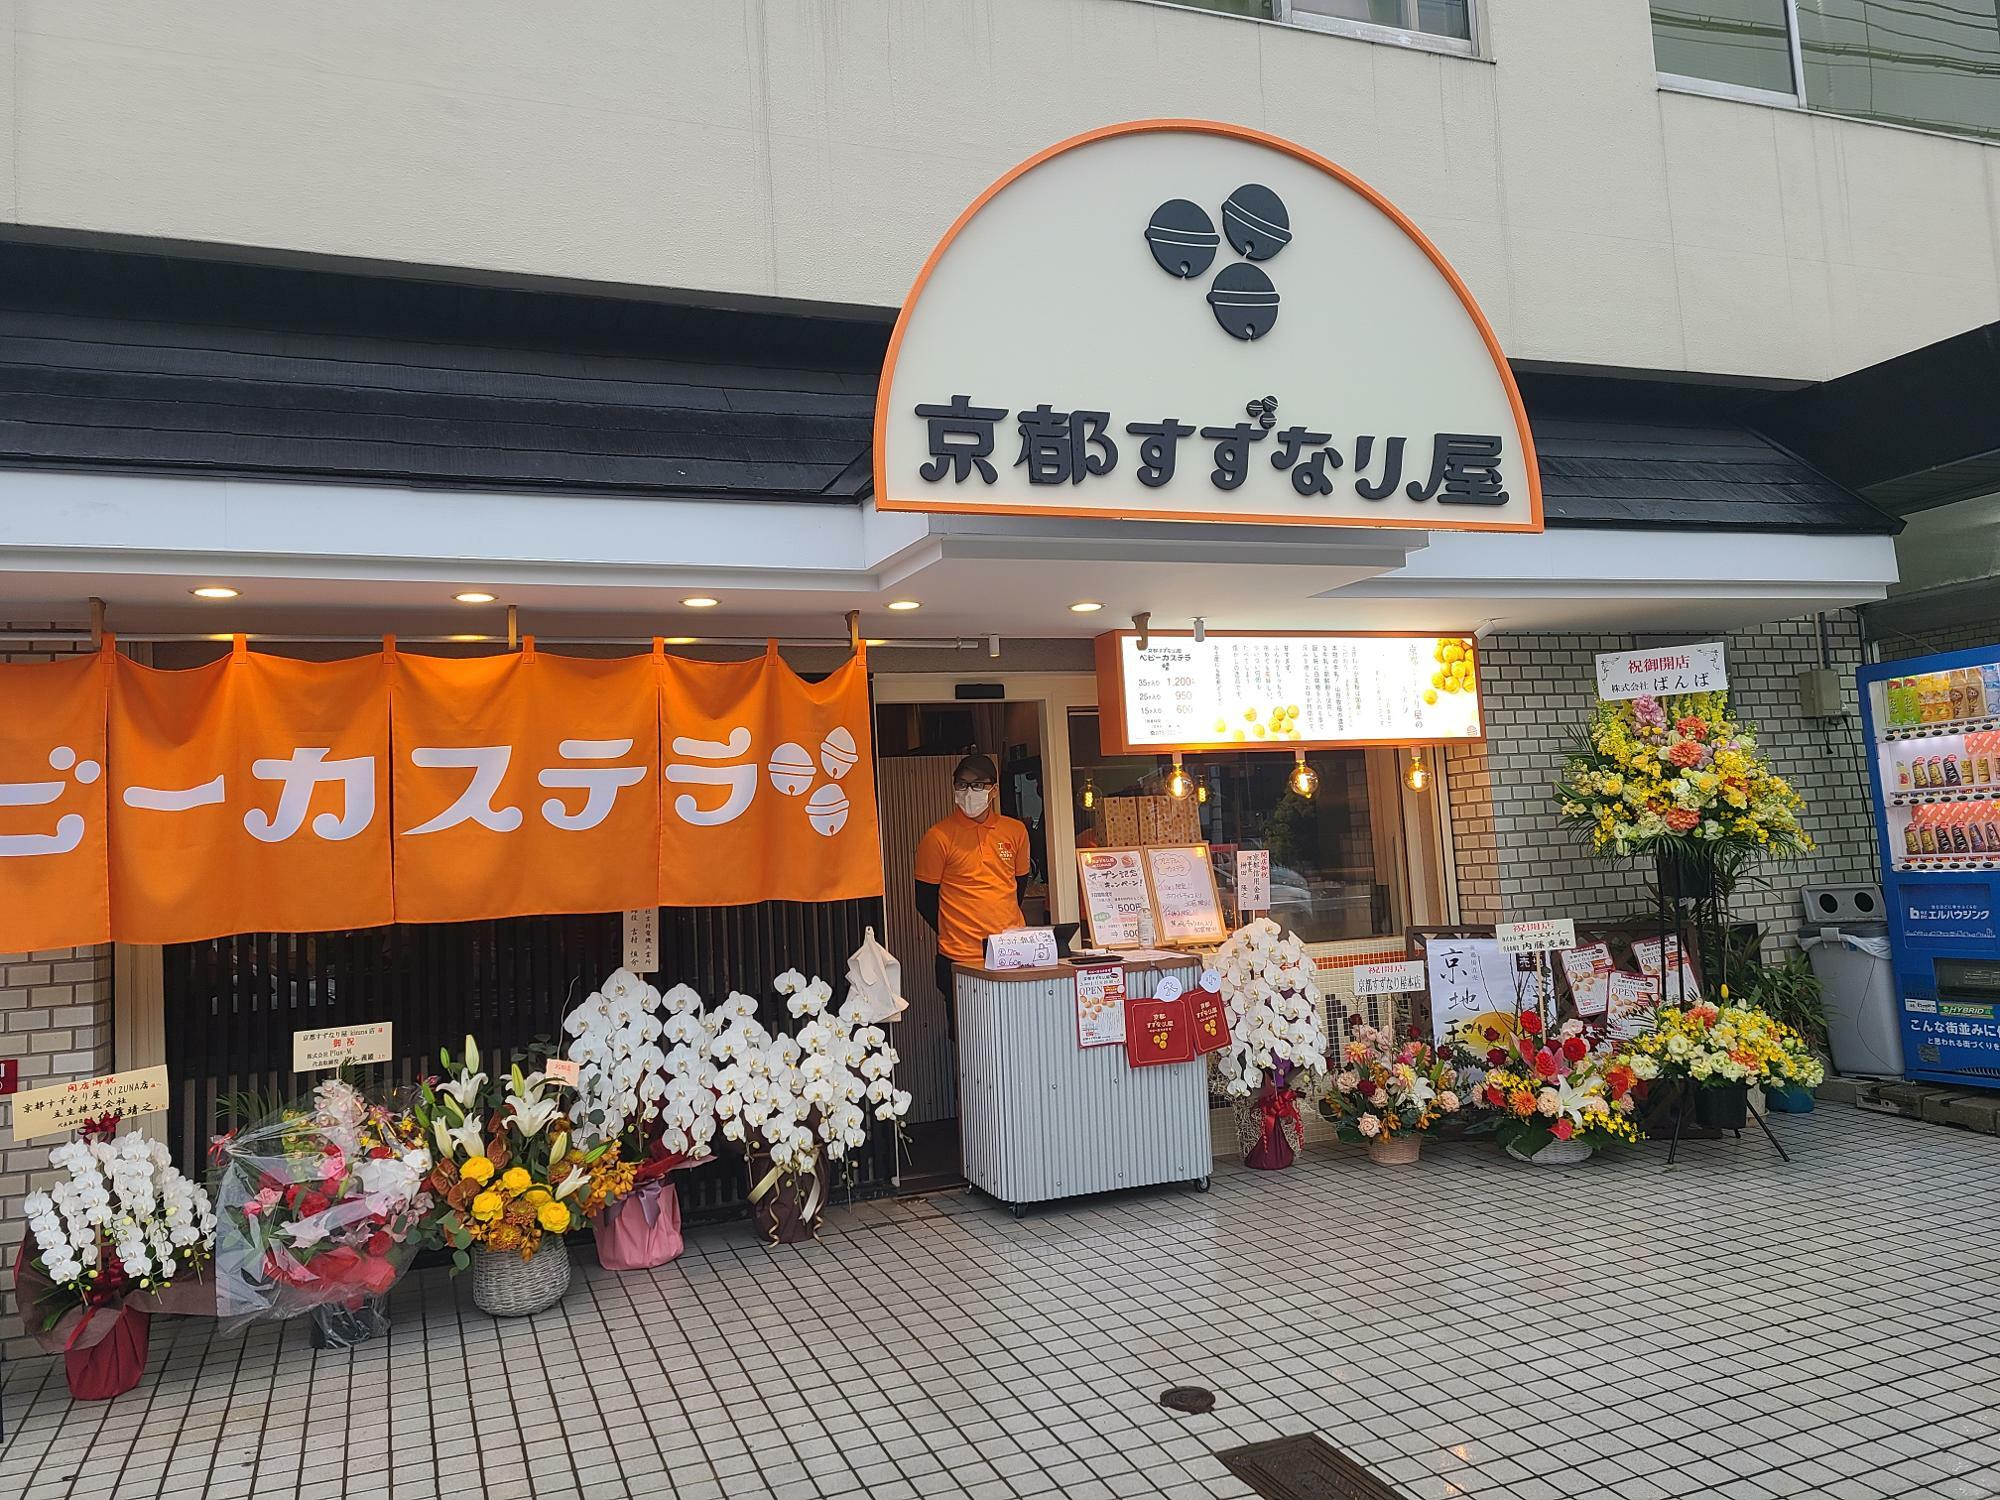 ベビーカステラ専門店「京都すずなり屋」のKIZUNA店